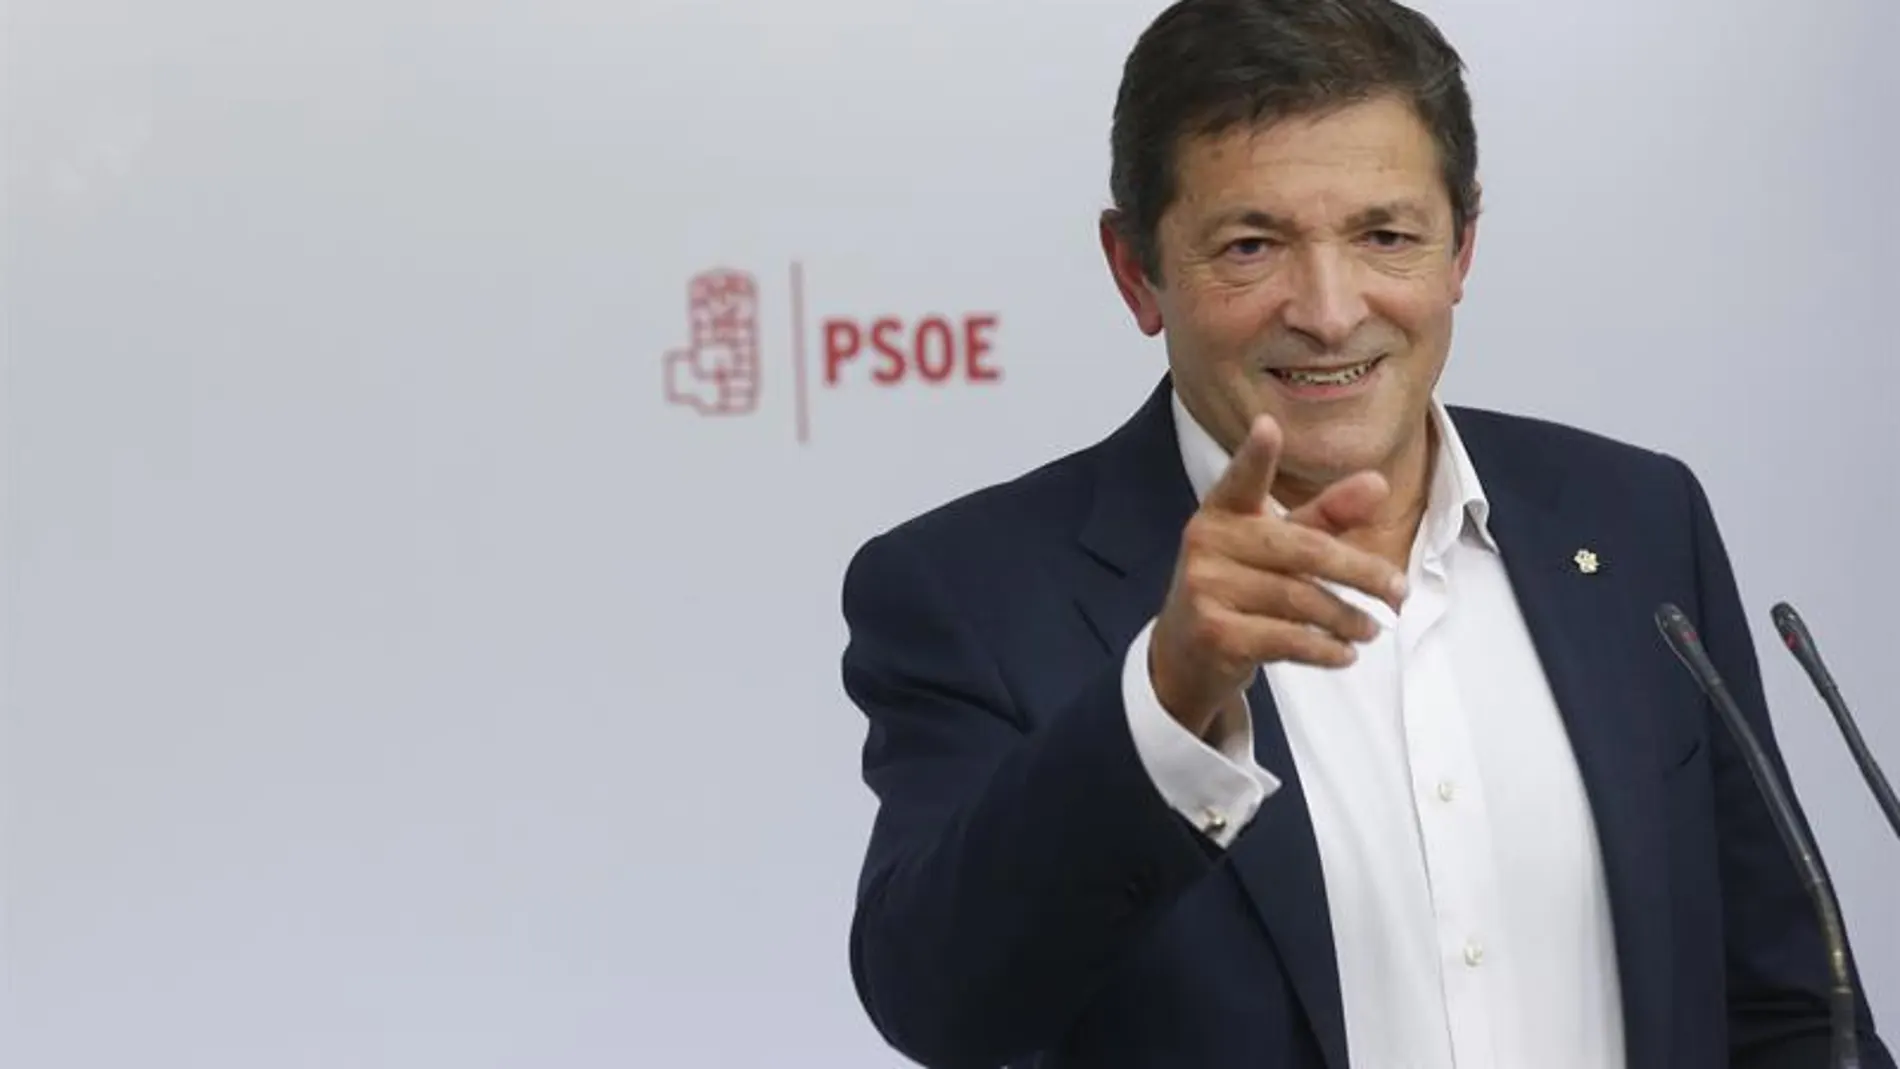   El presidente de la gestora del PSOE, Javier Fernández.